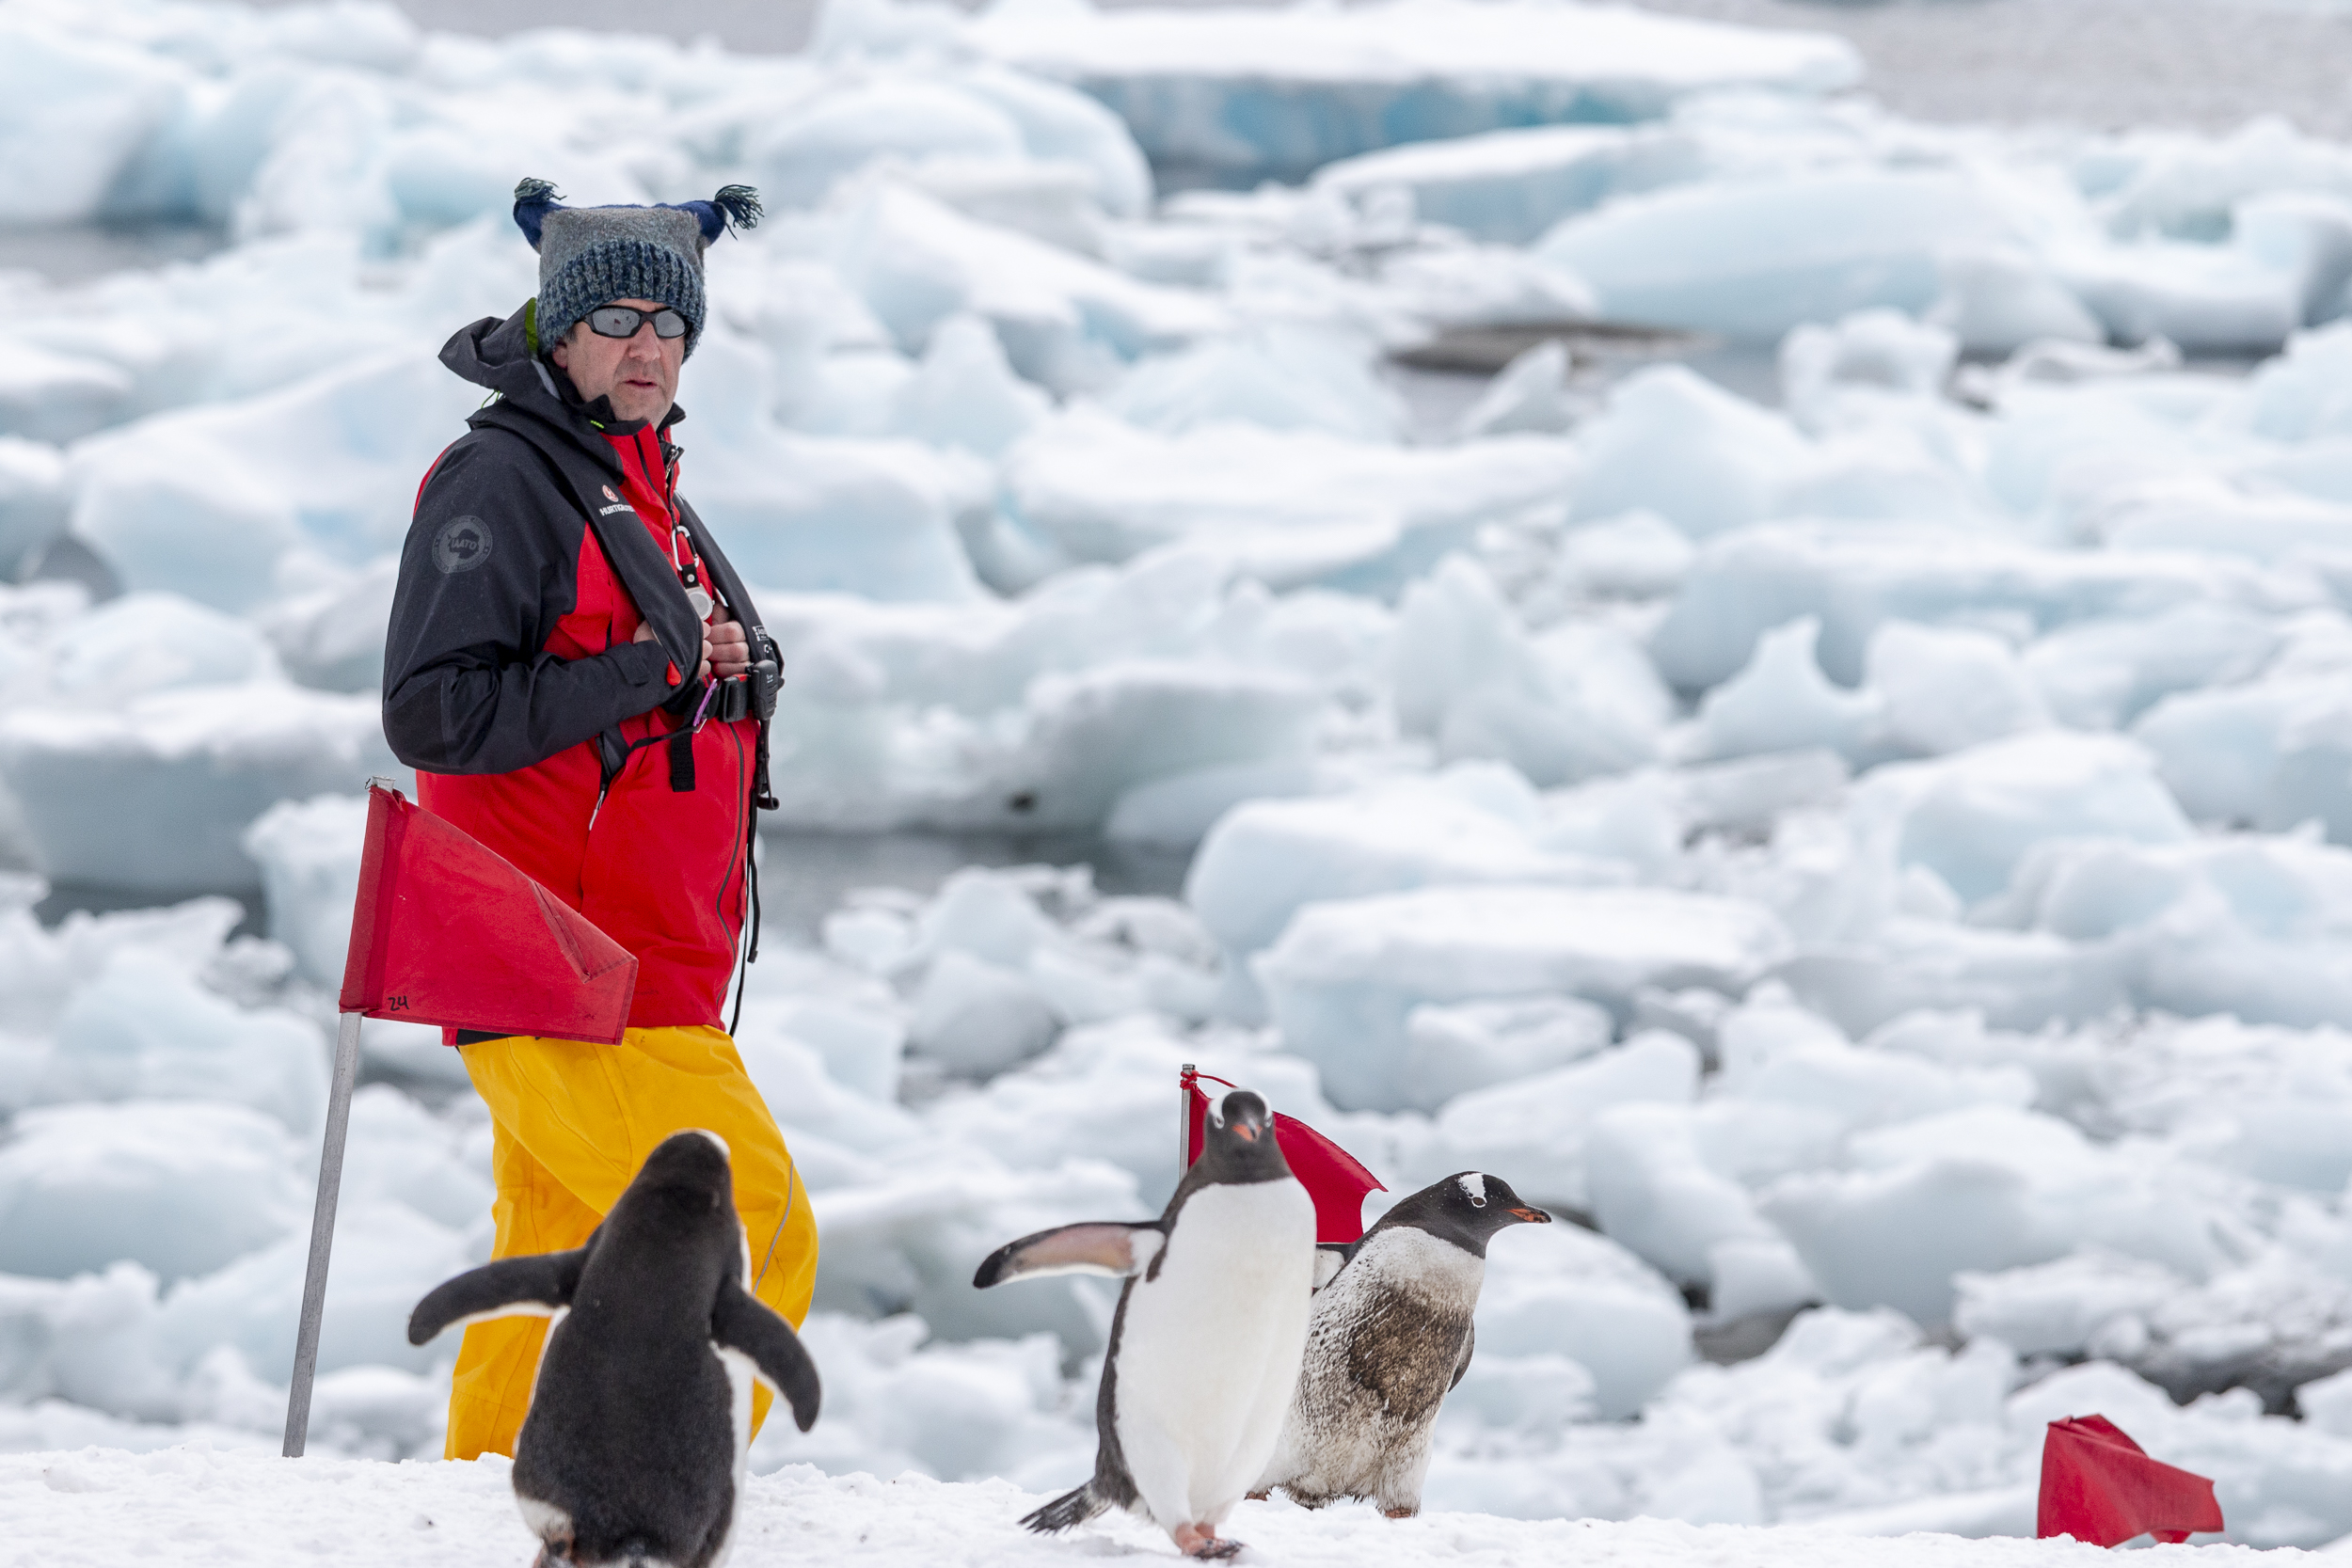 Working In Antarctica: “I Am My Weirdest Self!”